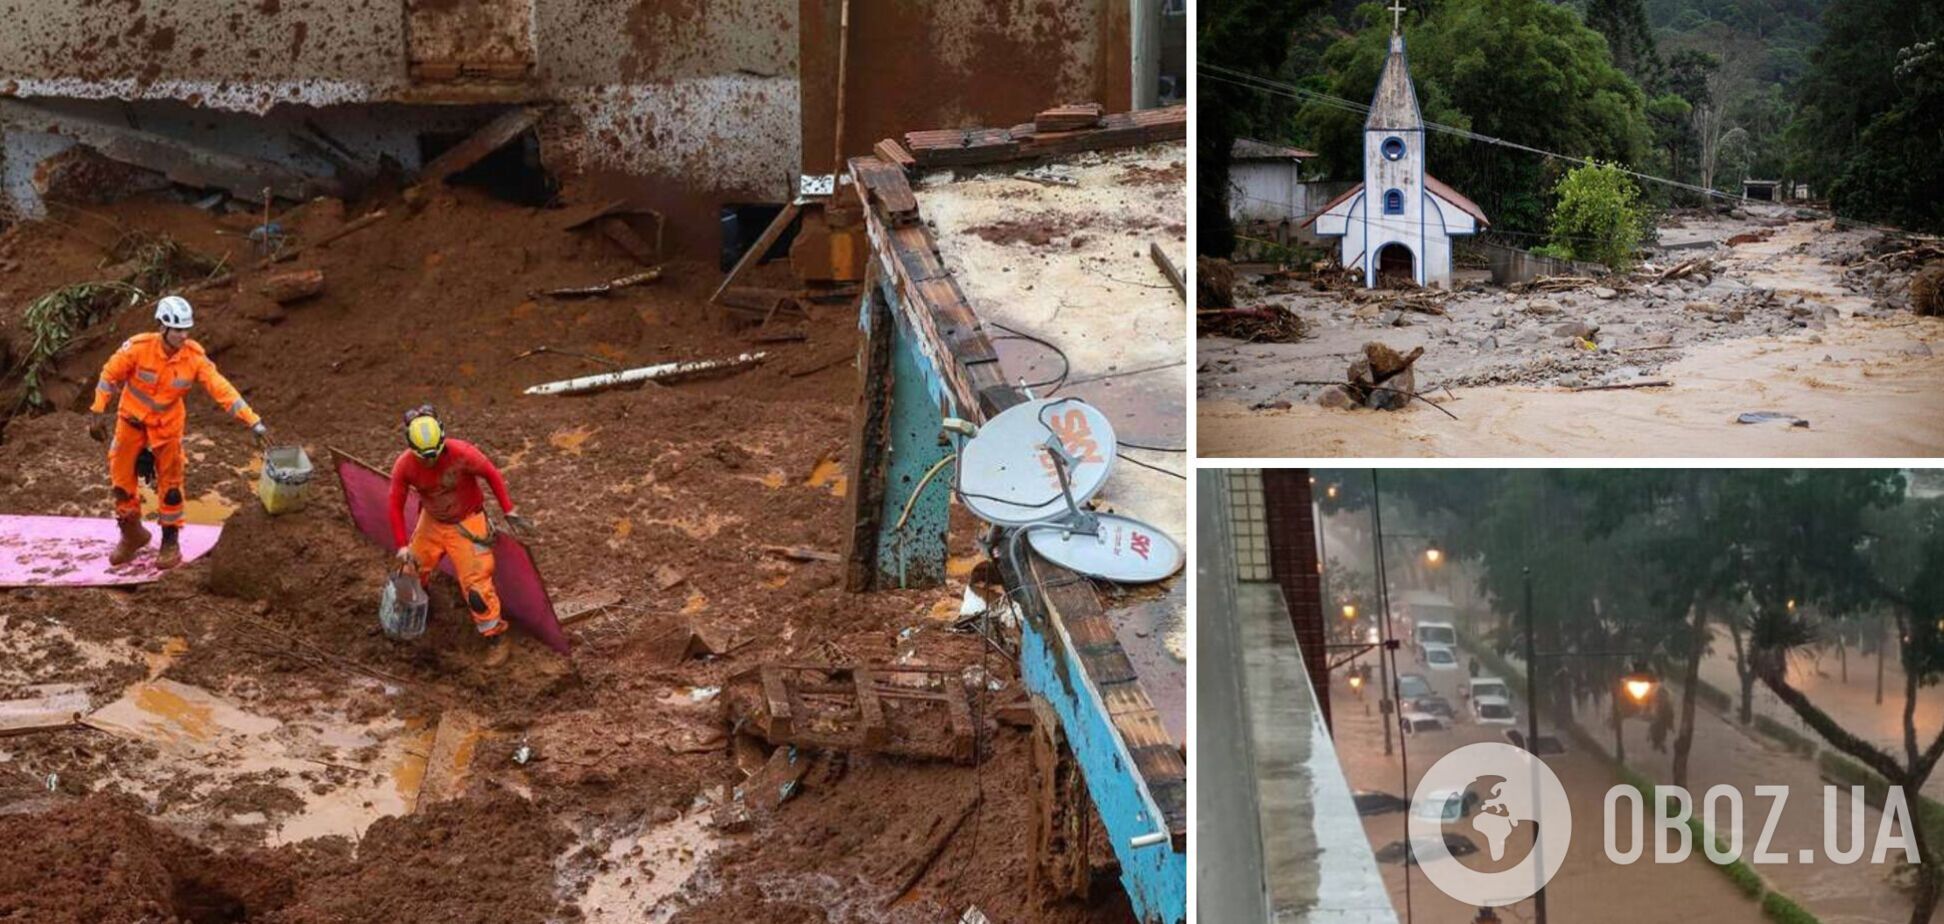 В Рио-де-Жанейро из-за проливных дождей сошел мощный сель: погибли 18 человек. Видео